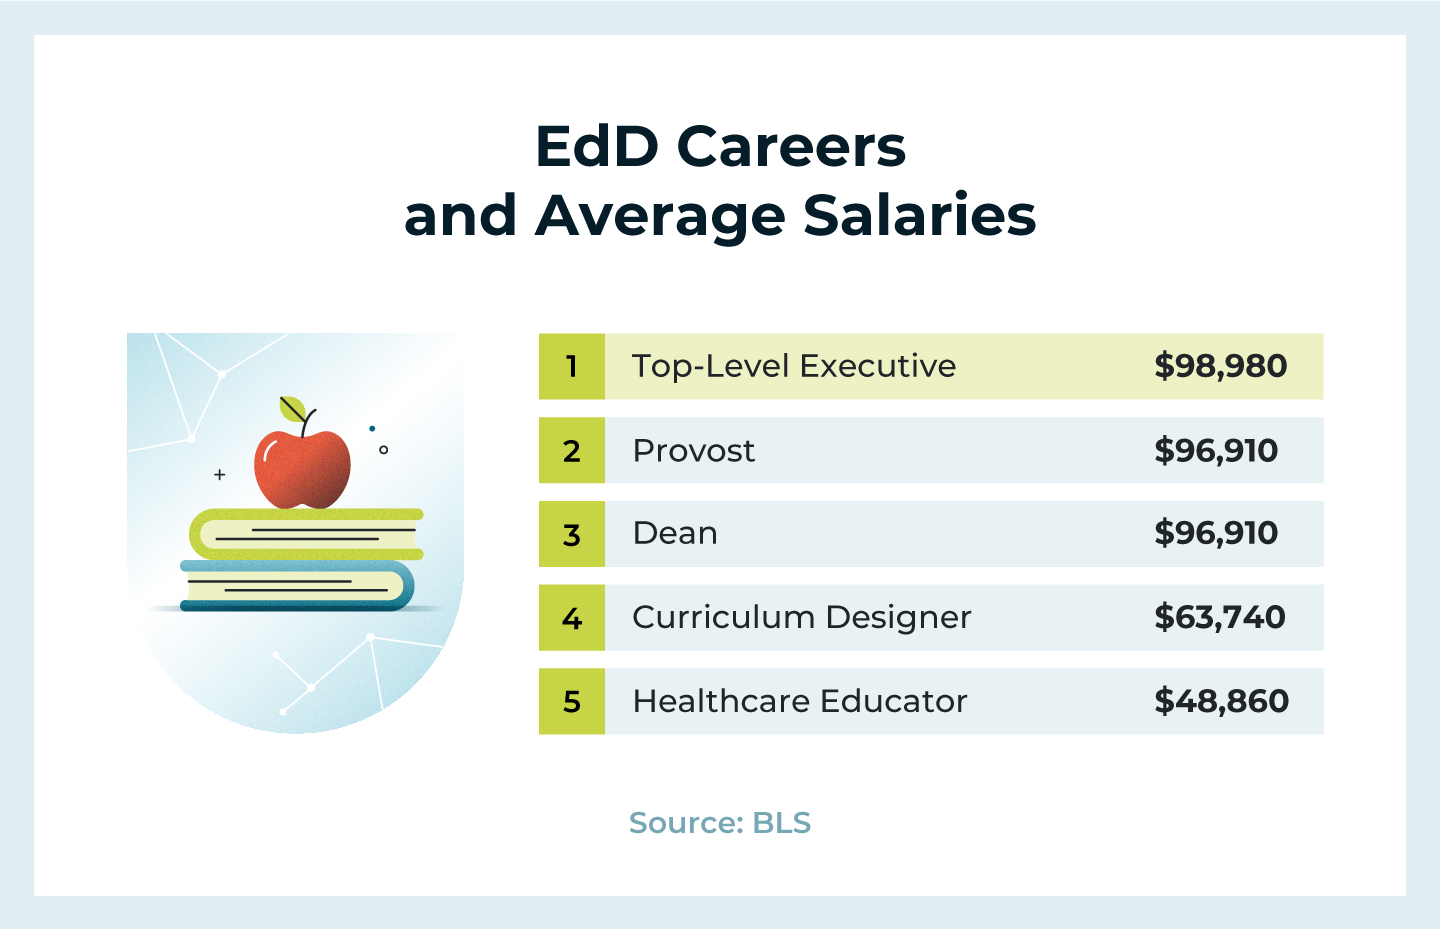 edd careers and average salaries